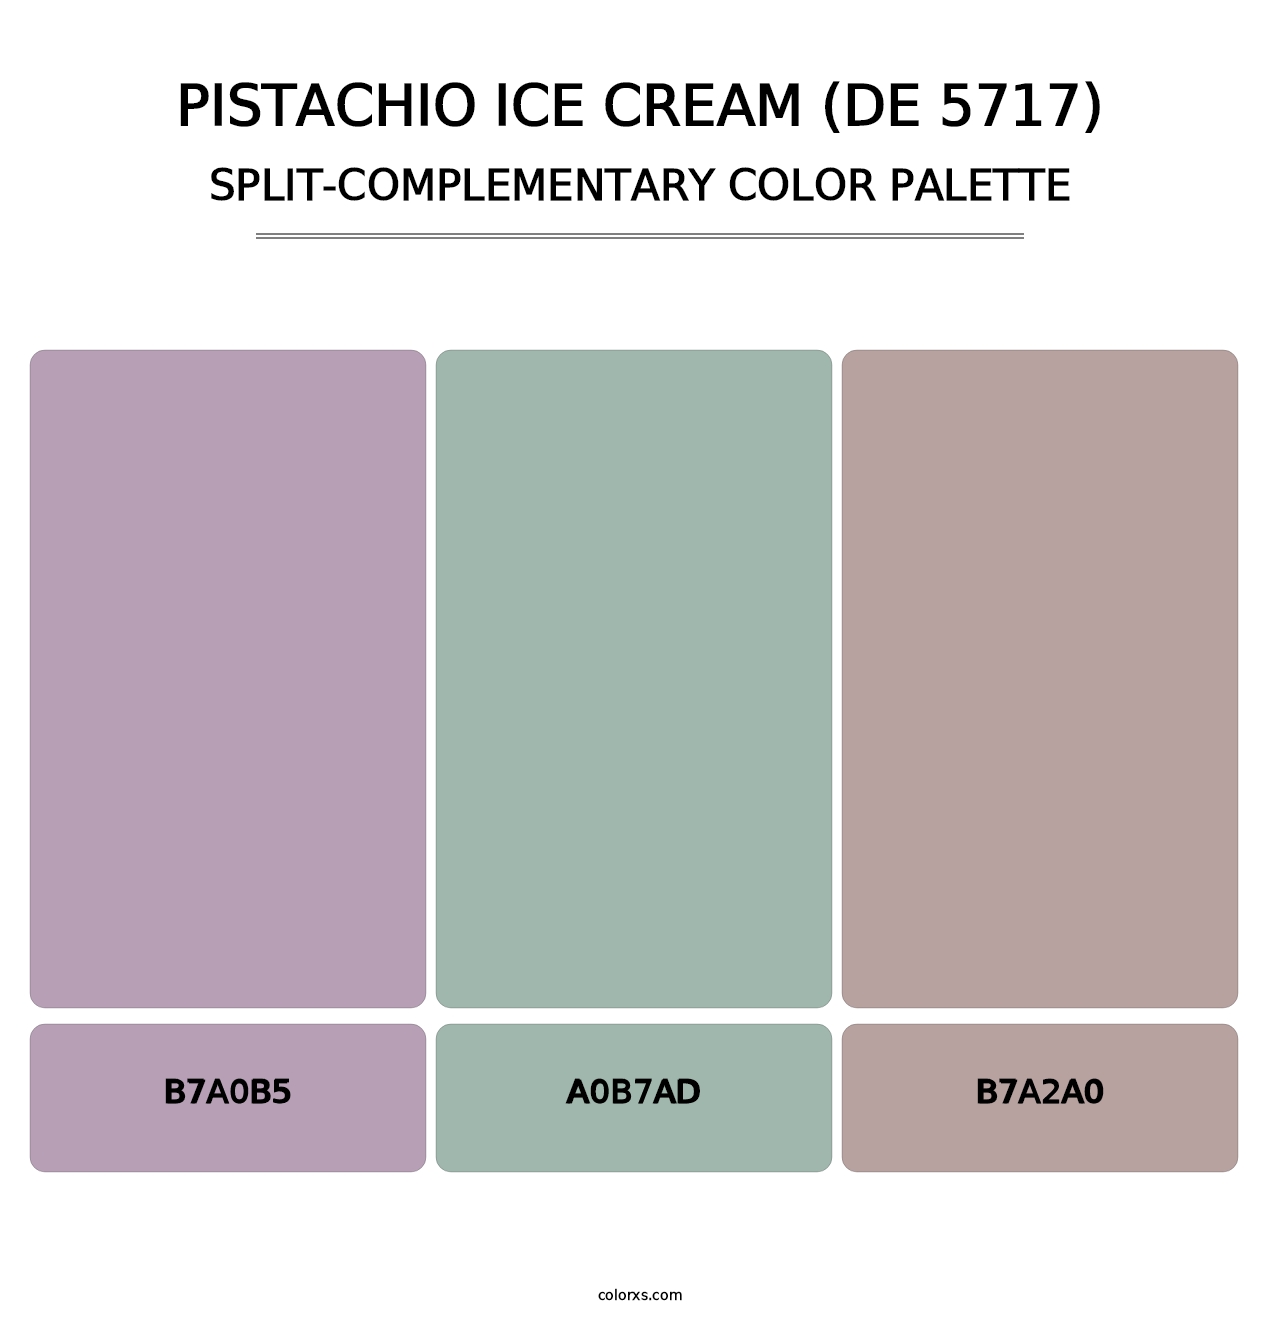 Pistachio Ice Cream (DE 5717) - Split-Complementary Color Palette